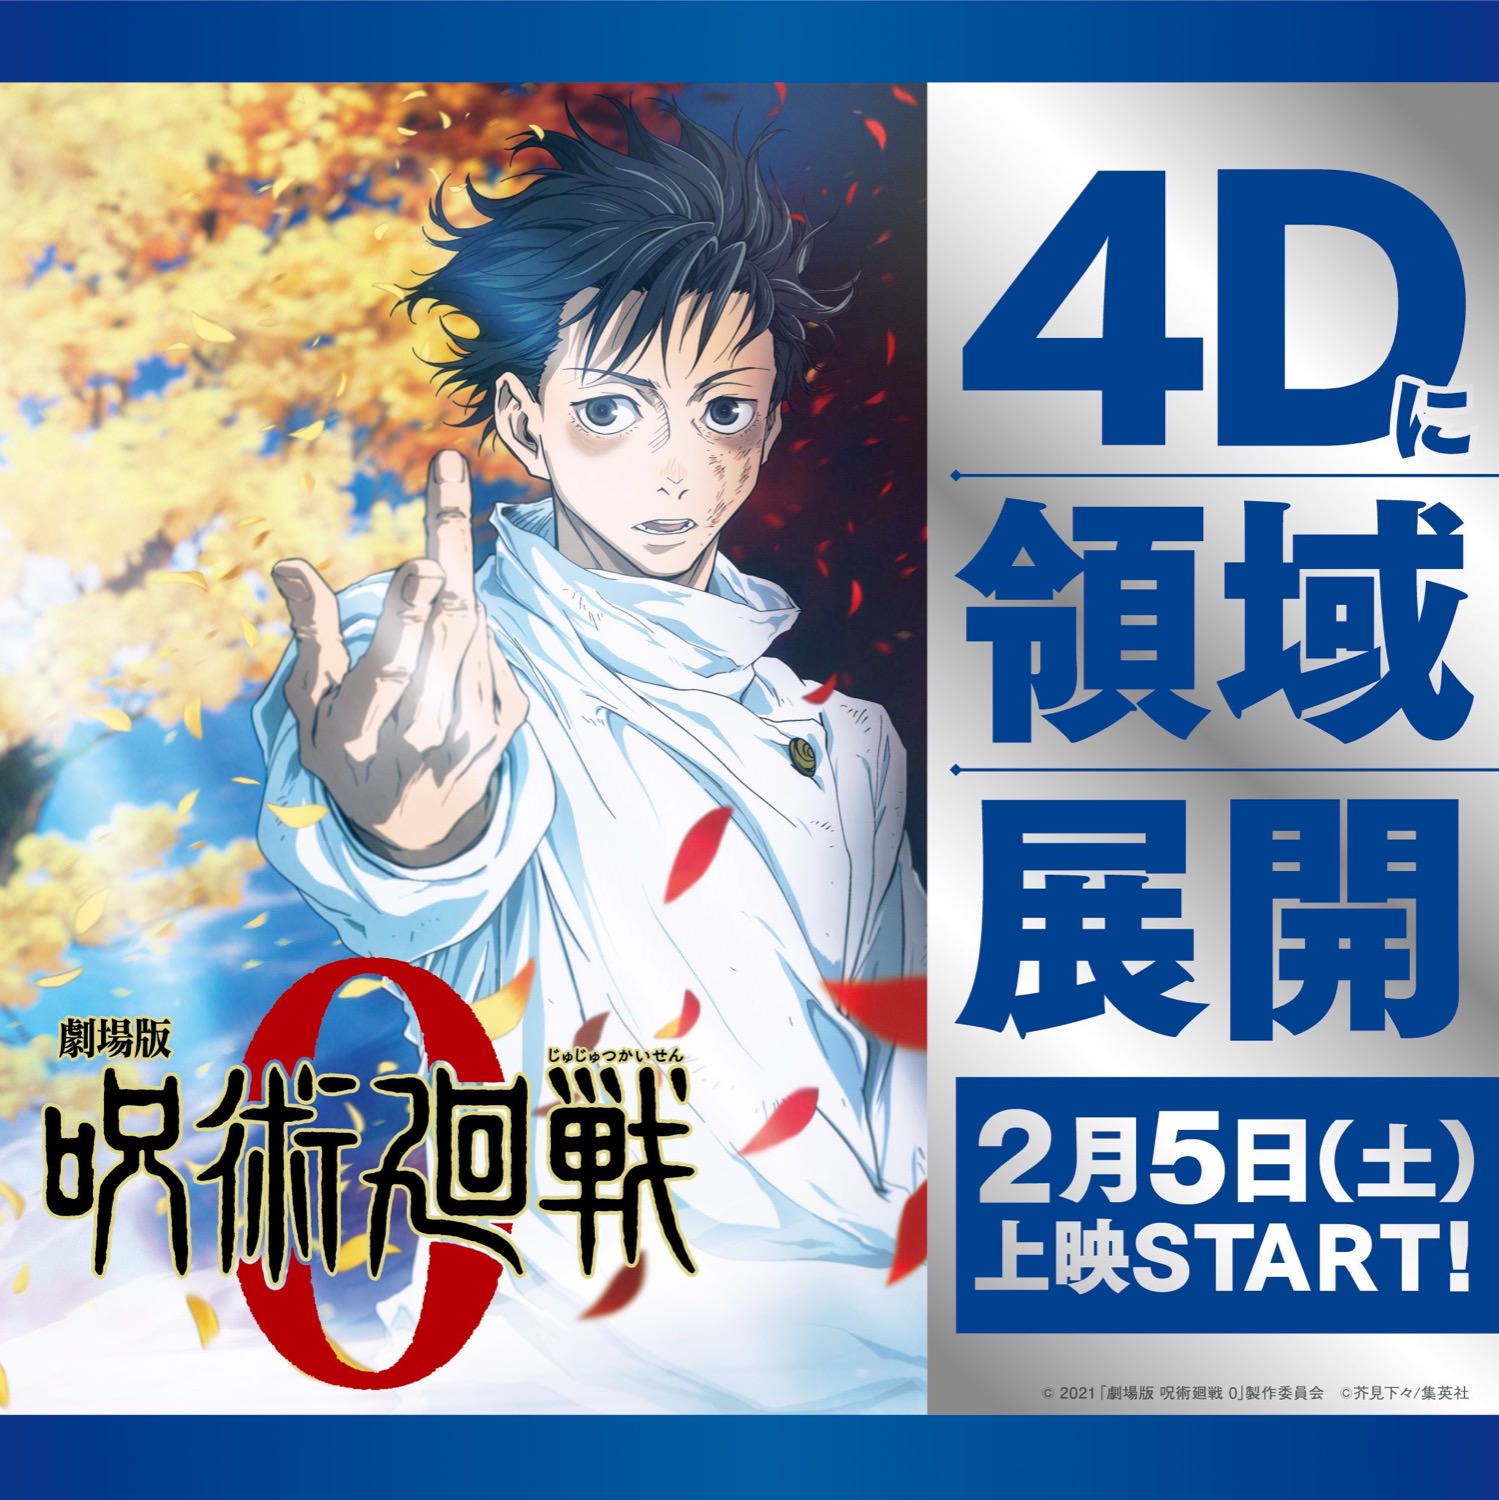 劇場版「呪術廻戦 0」2月5日より4D・MX4D・ドルビーシネマに領域展開!